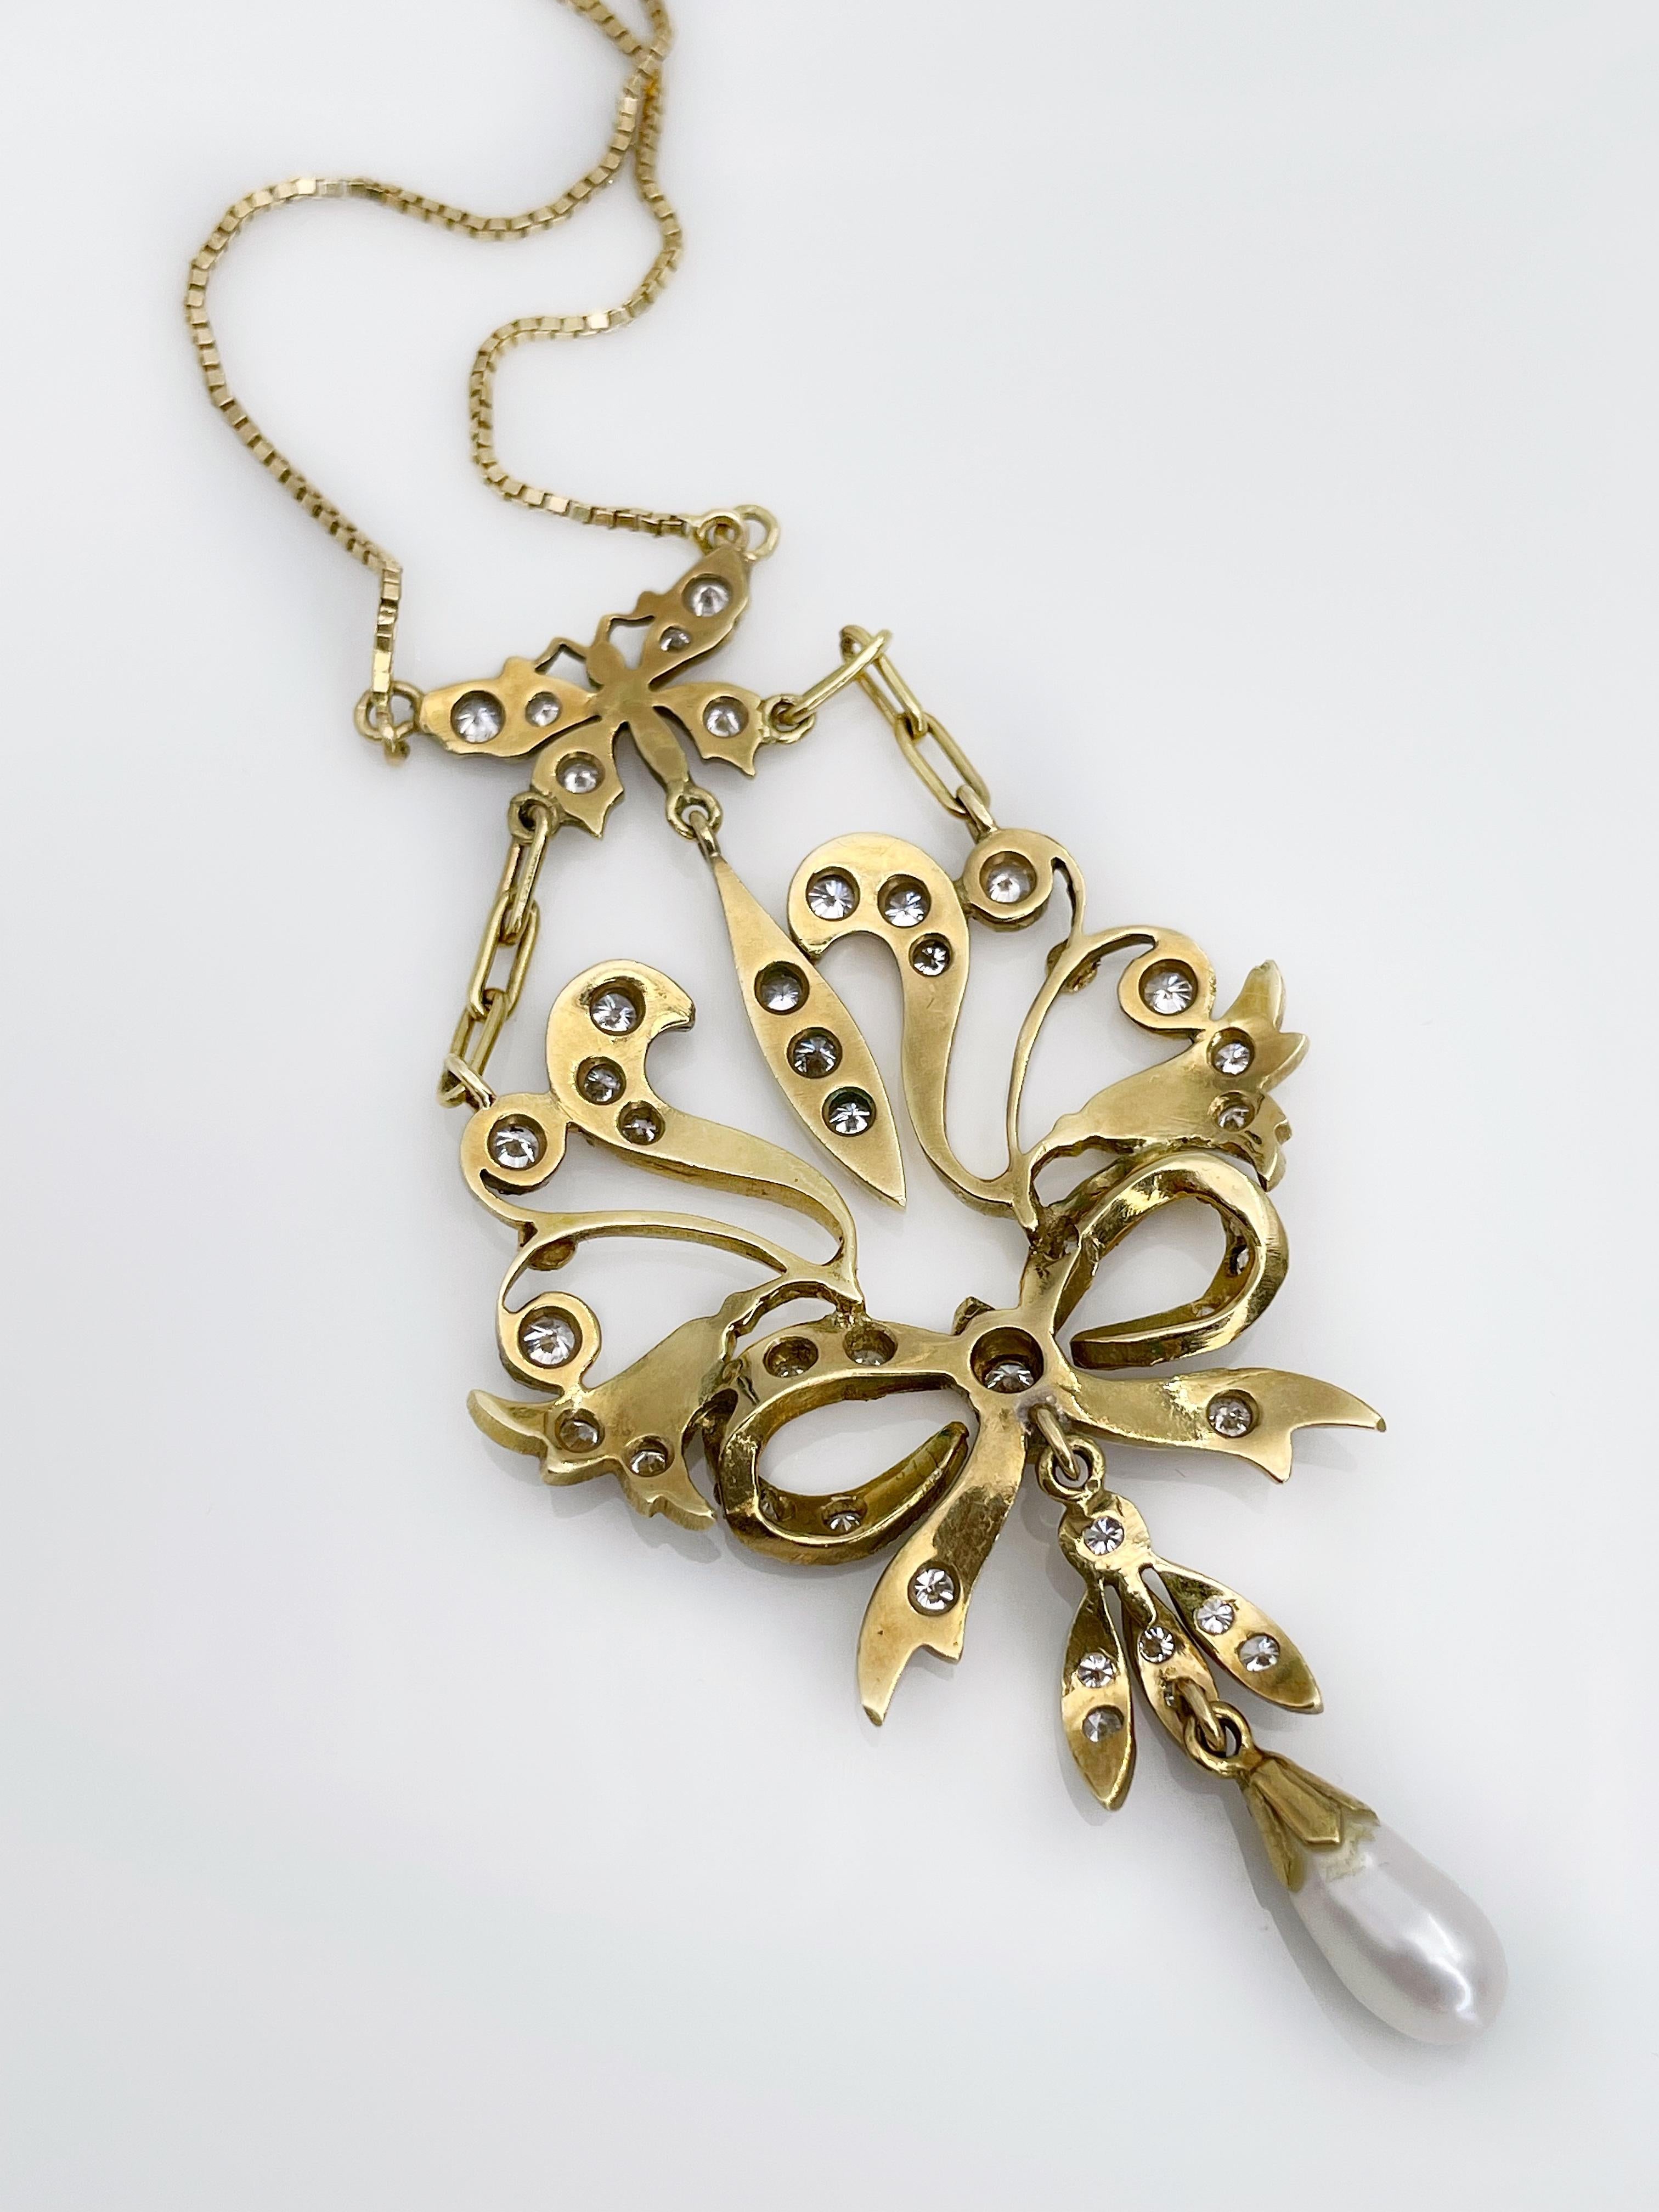 Brilliant Cut Art Nouveau Design 18K Yellow Gold 1, 50ct Diamond Pearl Floral Lavalier Necklace